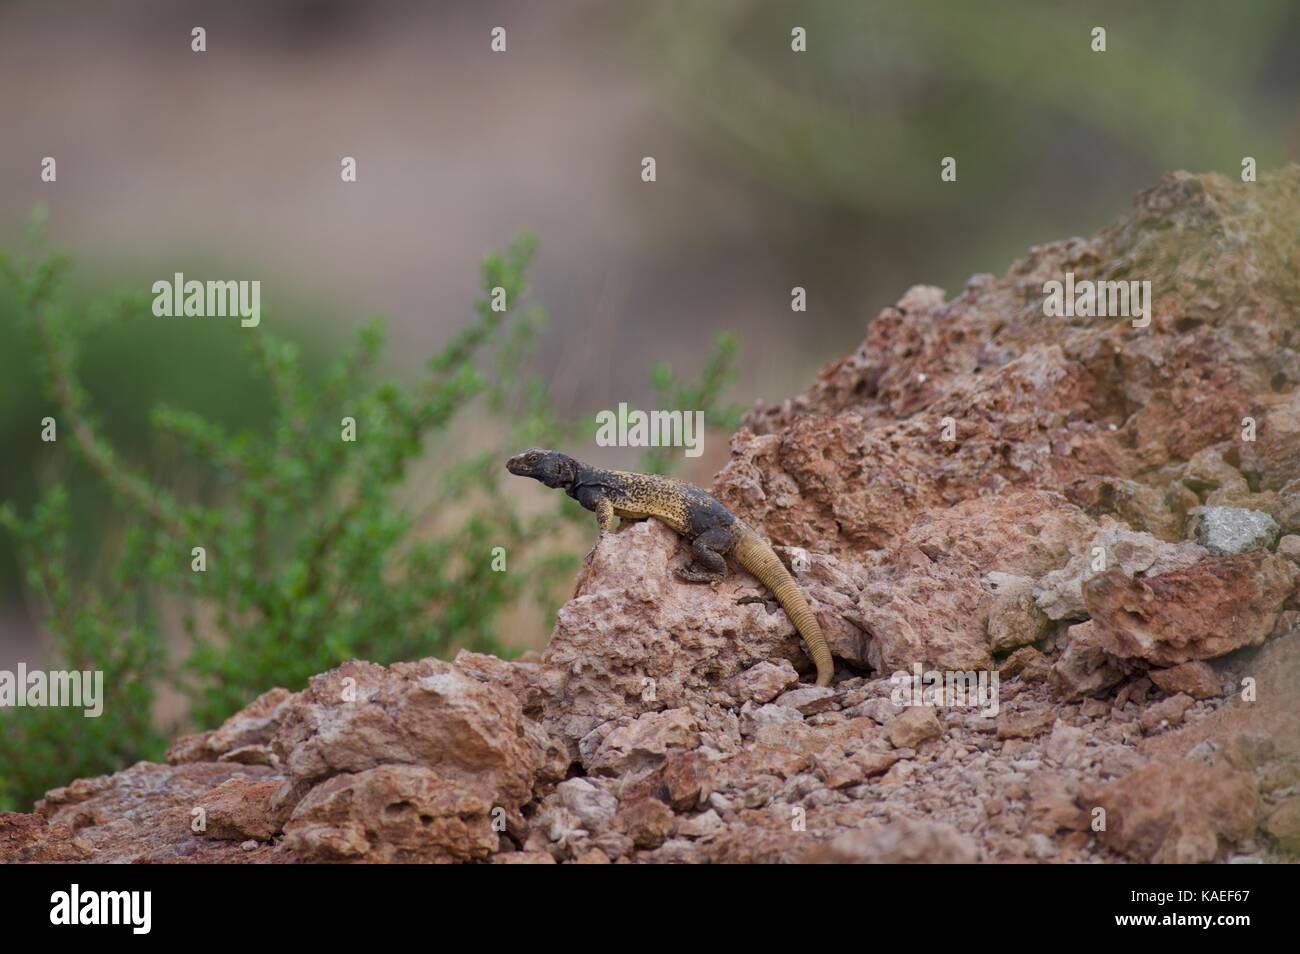 A Common Chuckwalla (Sauromalus after) perched on a rocky outcrop in Bahía de Kino, Sonora, Mexico Stock Photo